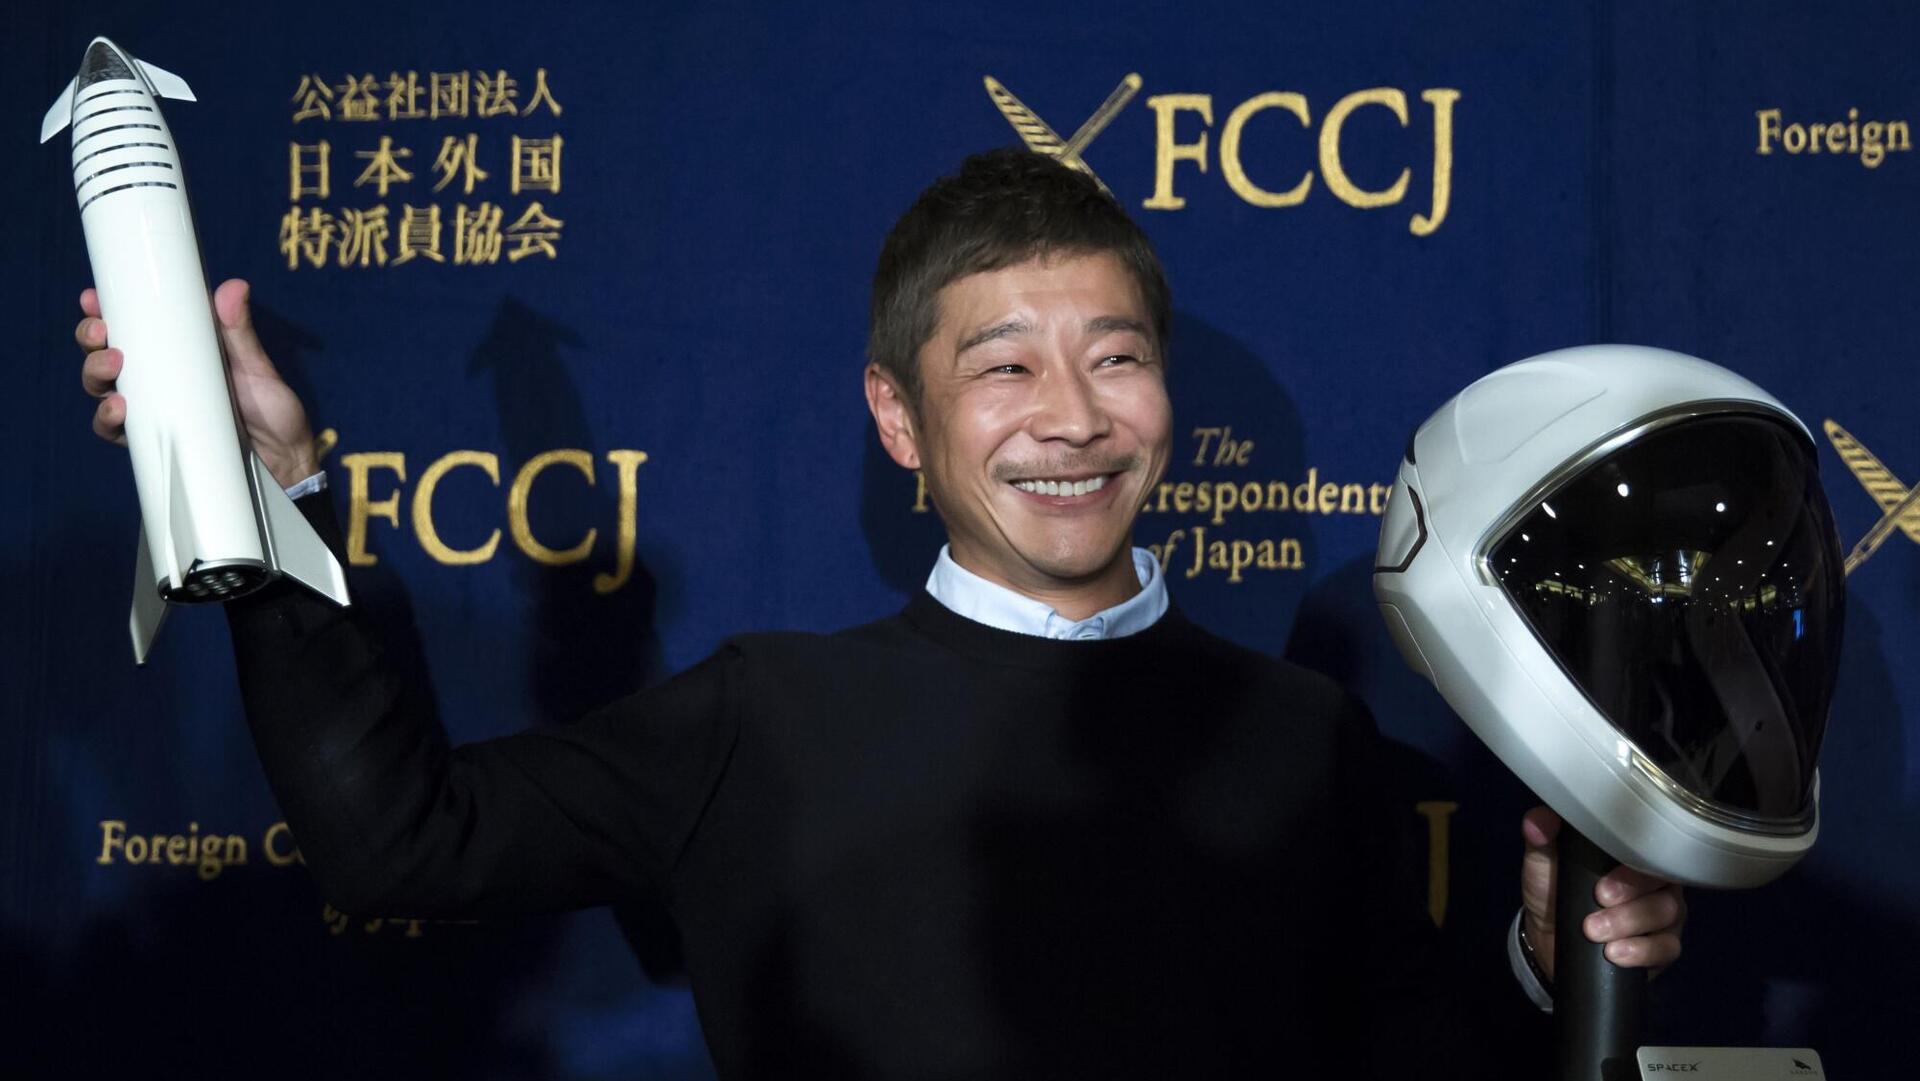 יוסאקו מאזאווה Yusaku Maezawa מיליארדר יפני יטוס לחלל עם SpaceX